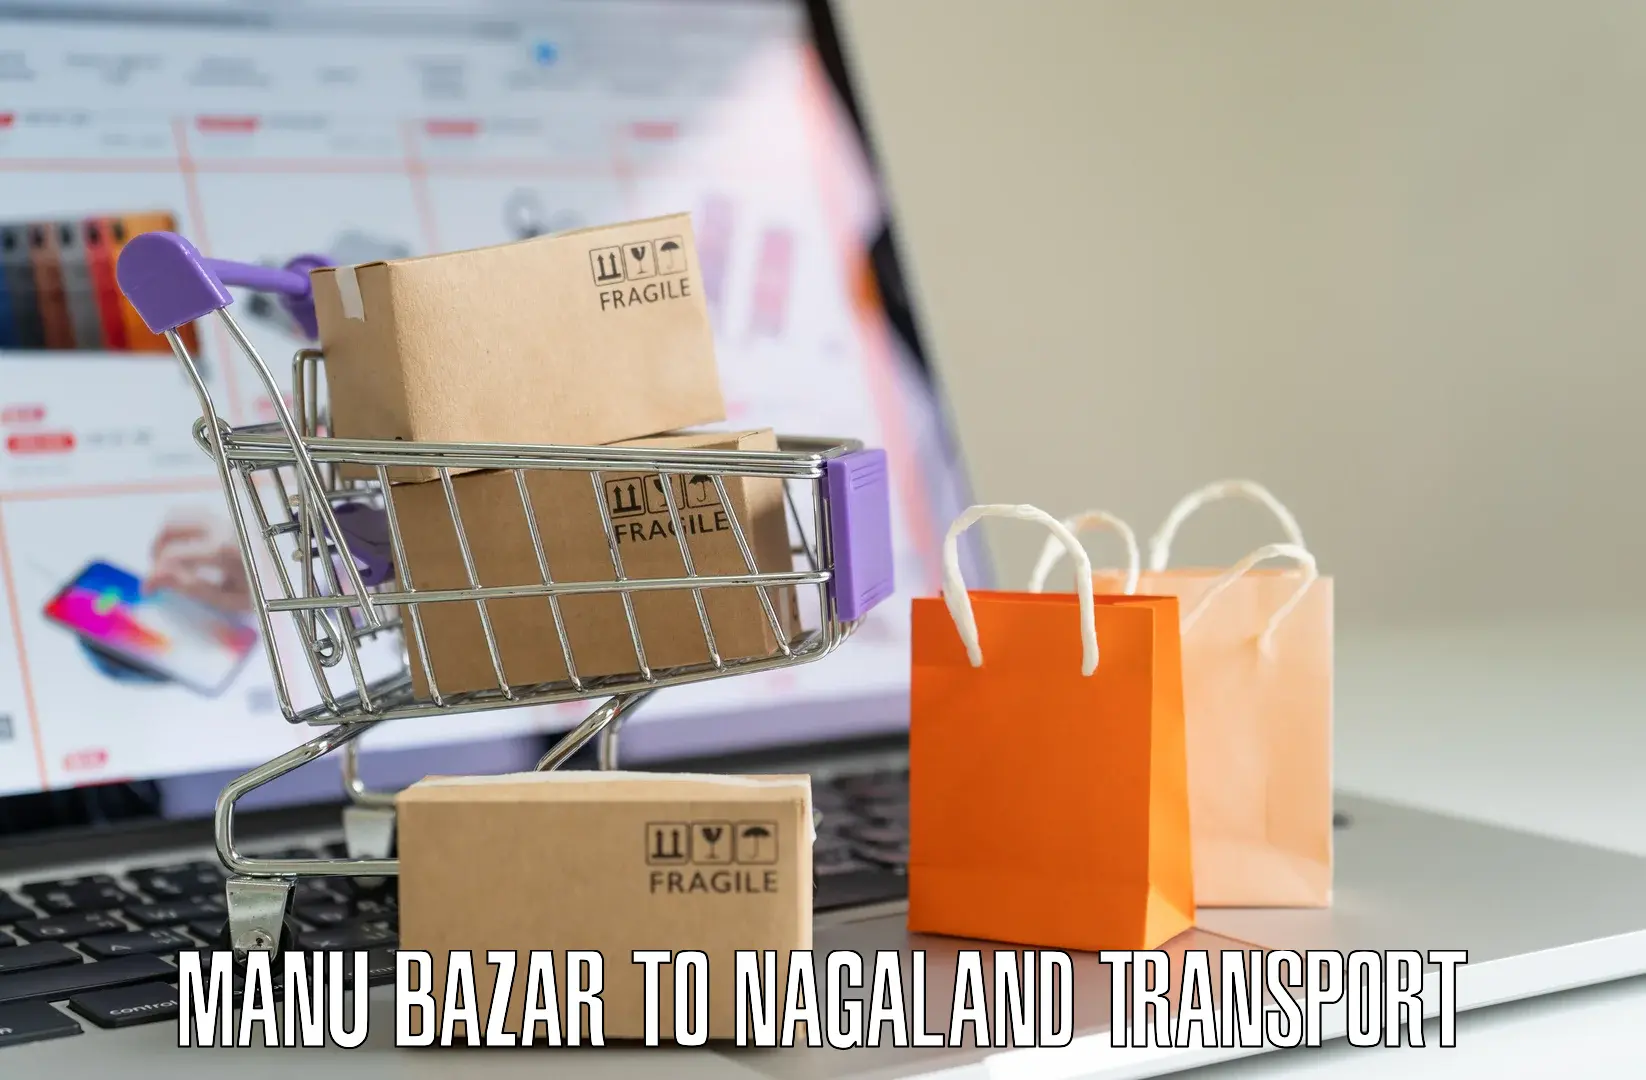 Online transport service Manu Bazar to Nagaland